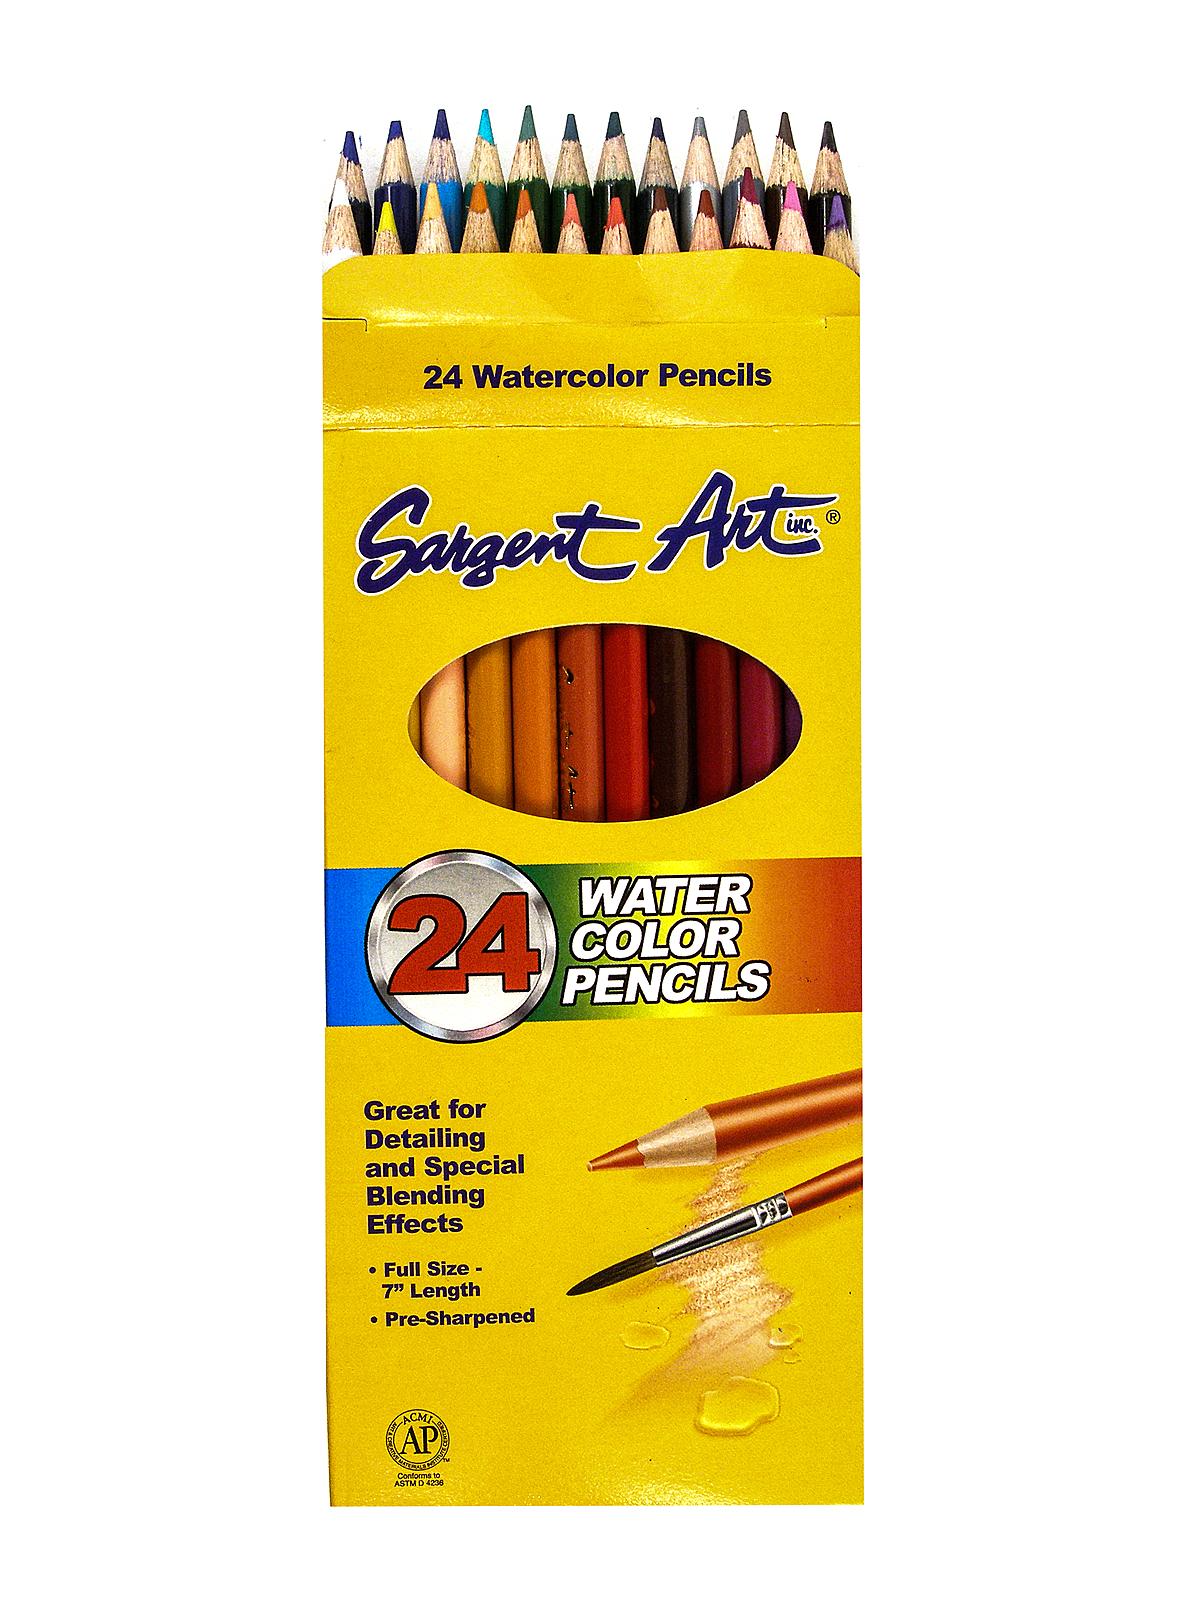 Watercolor Pencils 24 Count